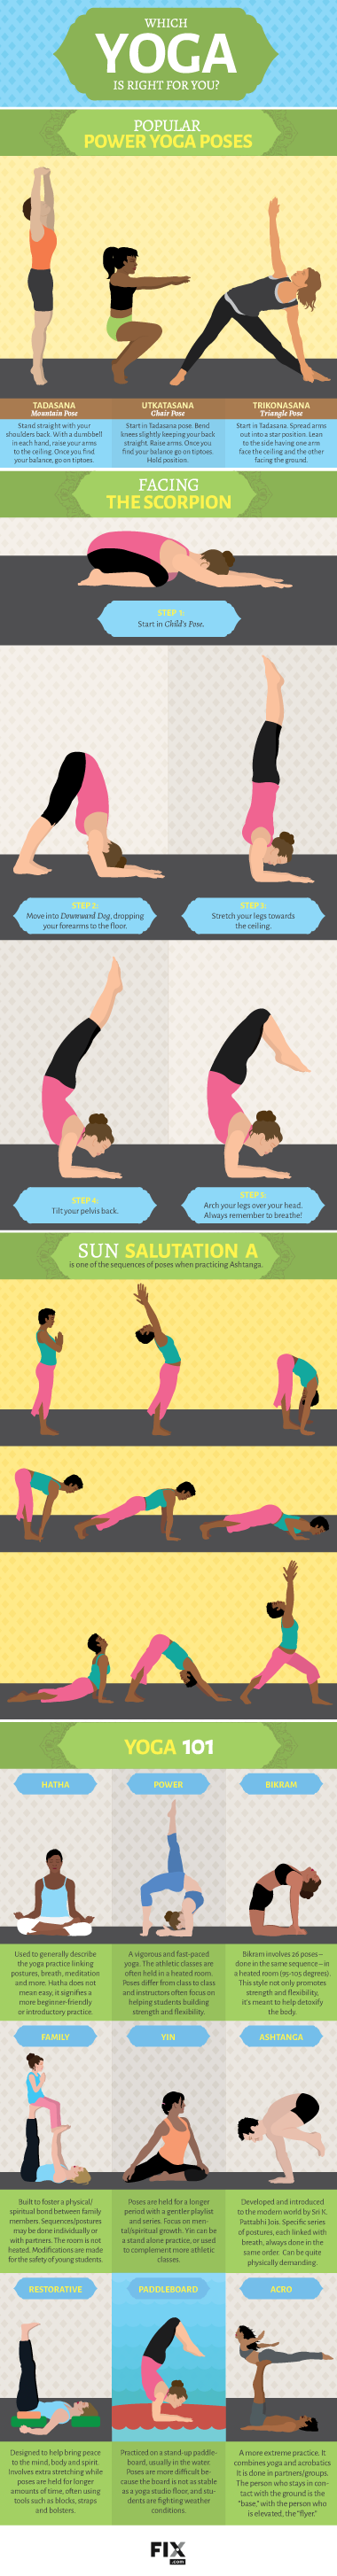 Choosing a Yoga Style